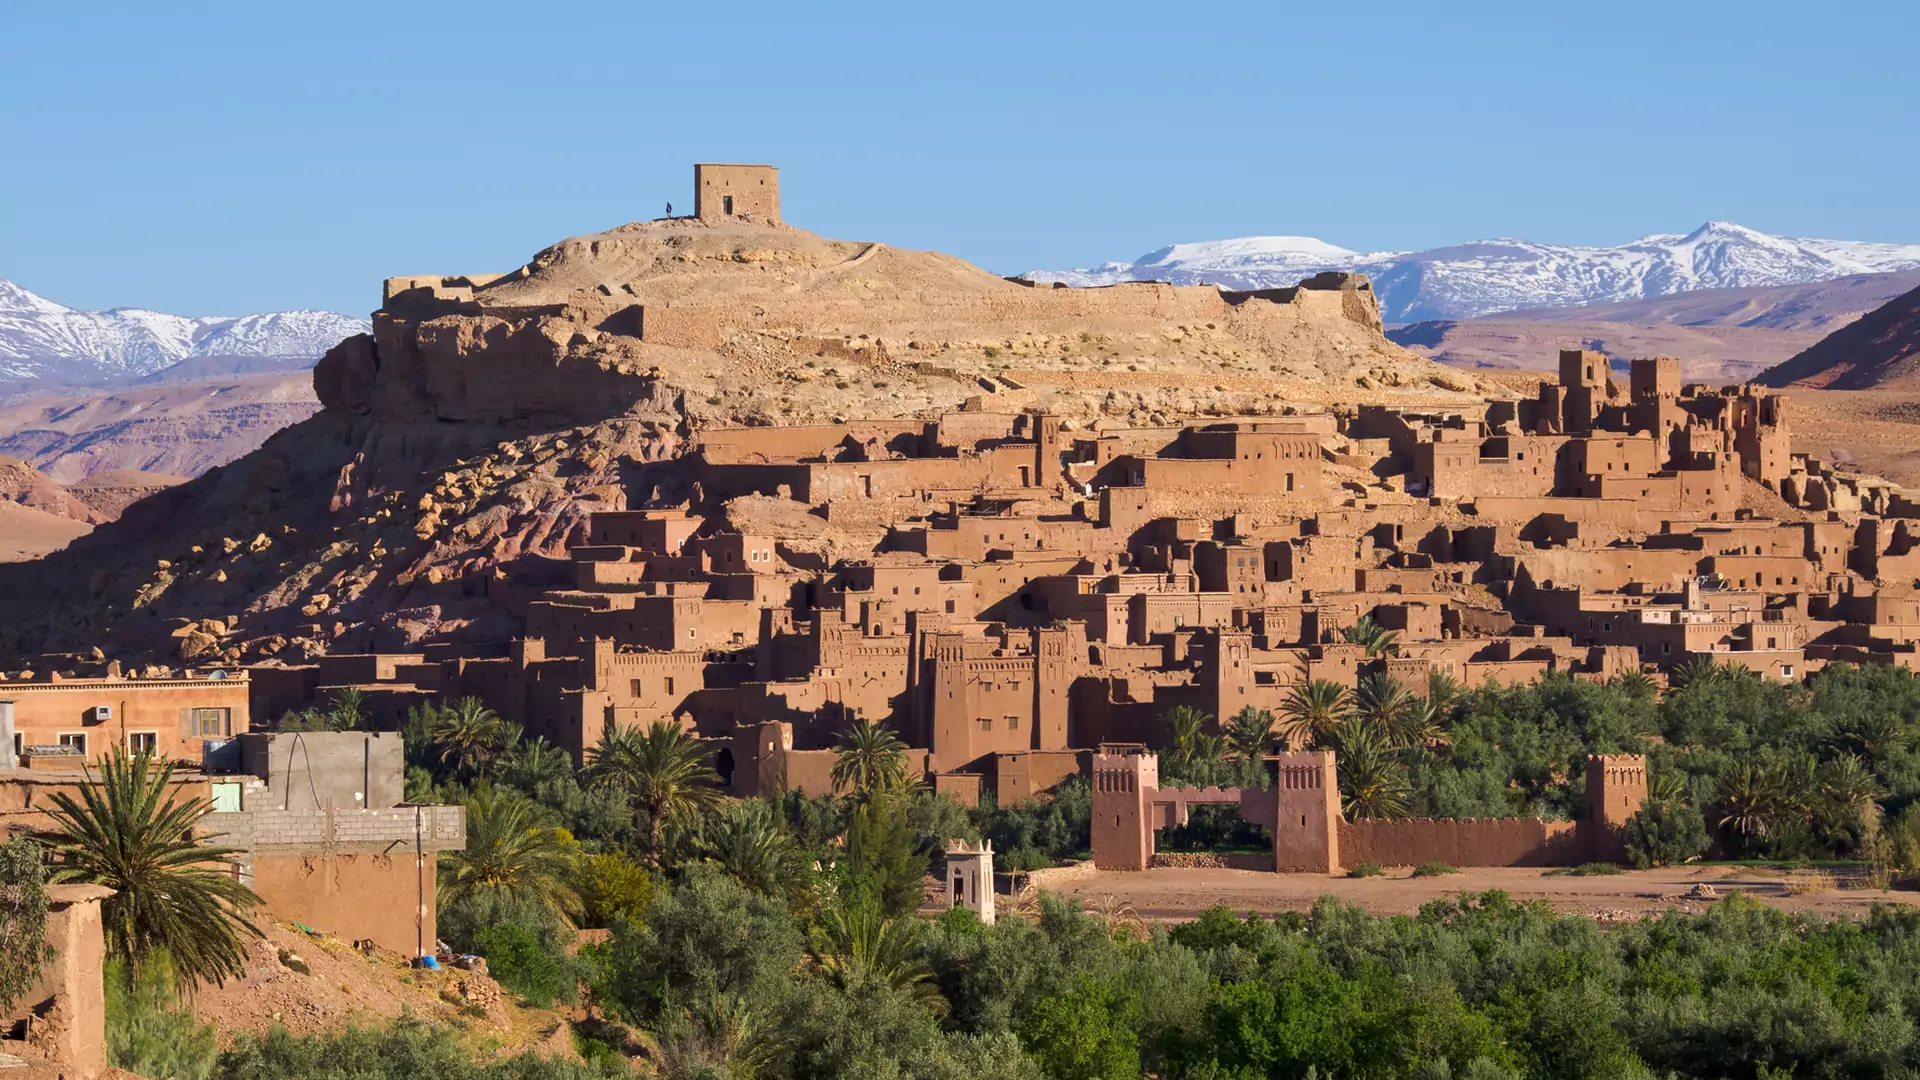 Maroko to kolejny kraj, do którego pielgrzymują fani "Gry o Tron". Zachwyci także innych